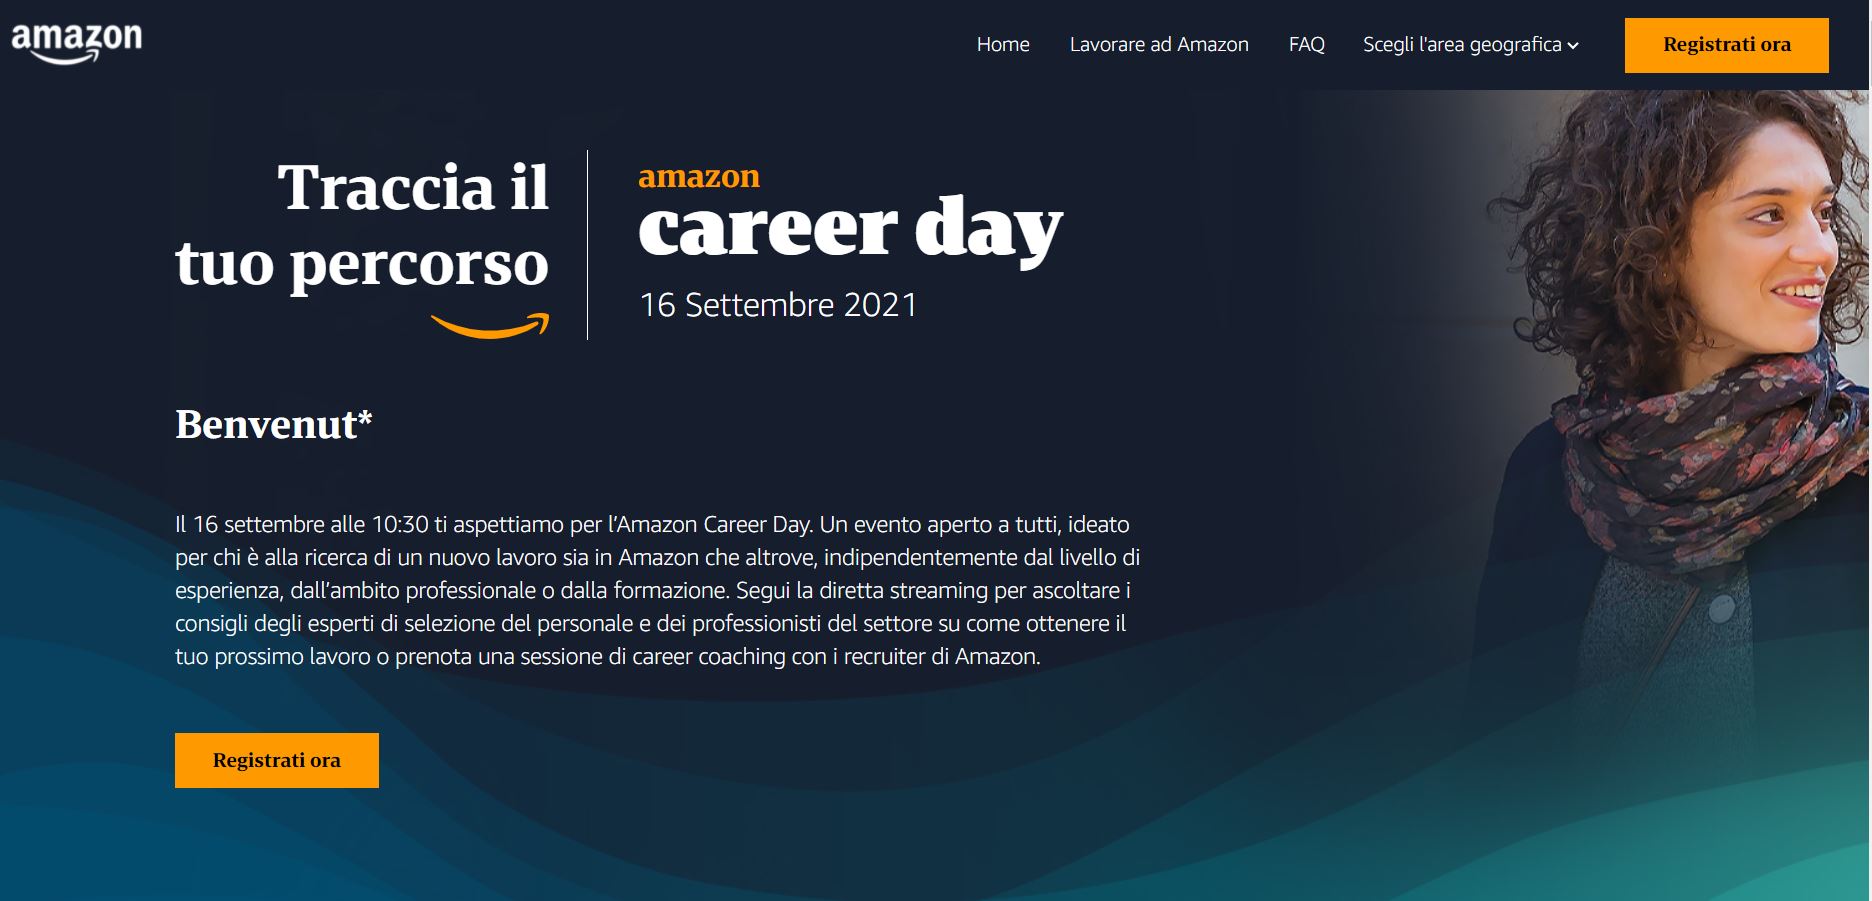 Amazon presenta l’edizione italiana del Career Day